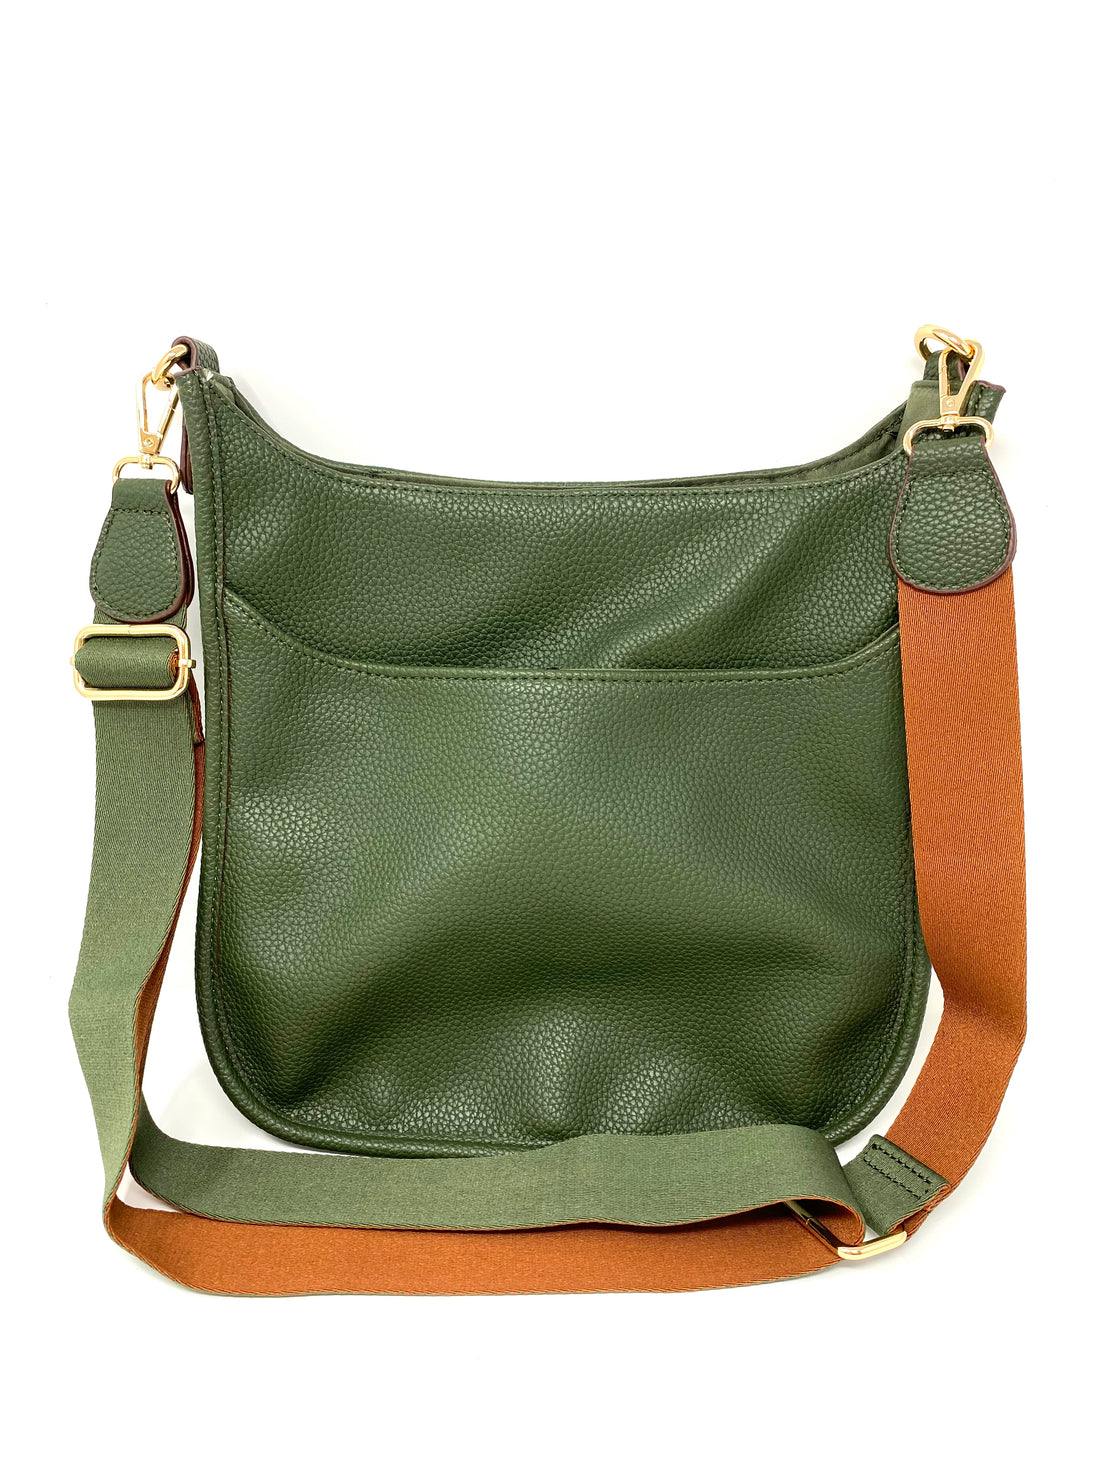 Saddle Bag in Vegan Leather in Olive